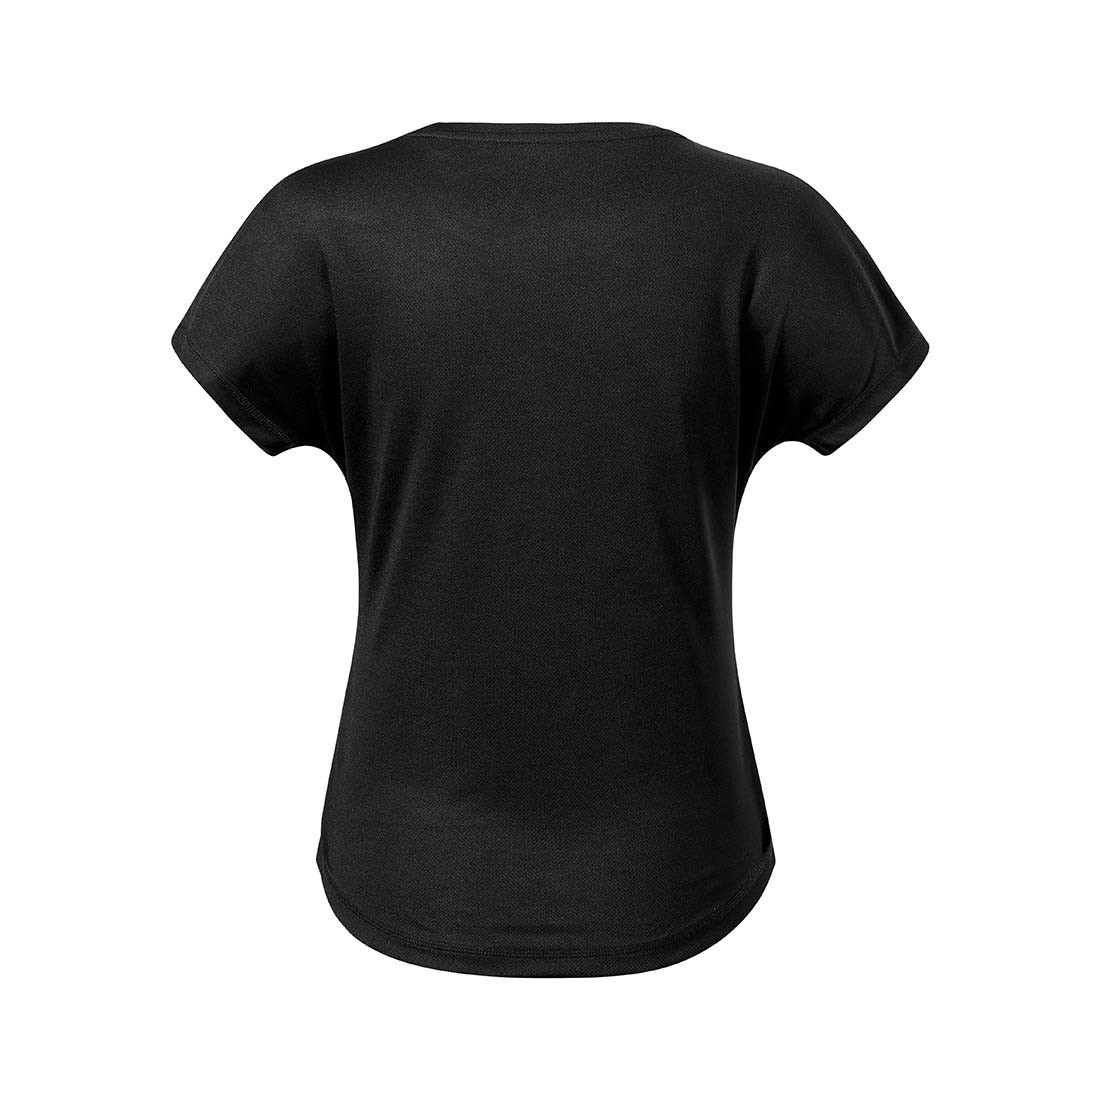 Camiseta mujer CHANCE - Ropa de protección